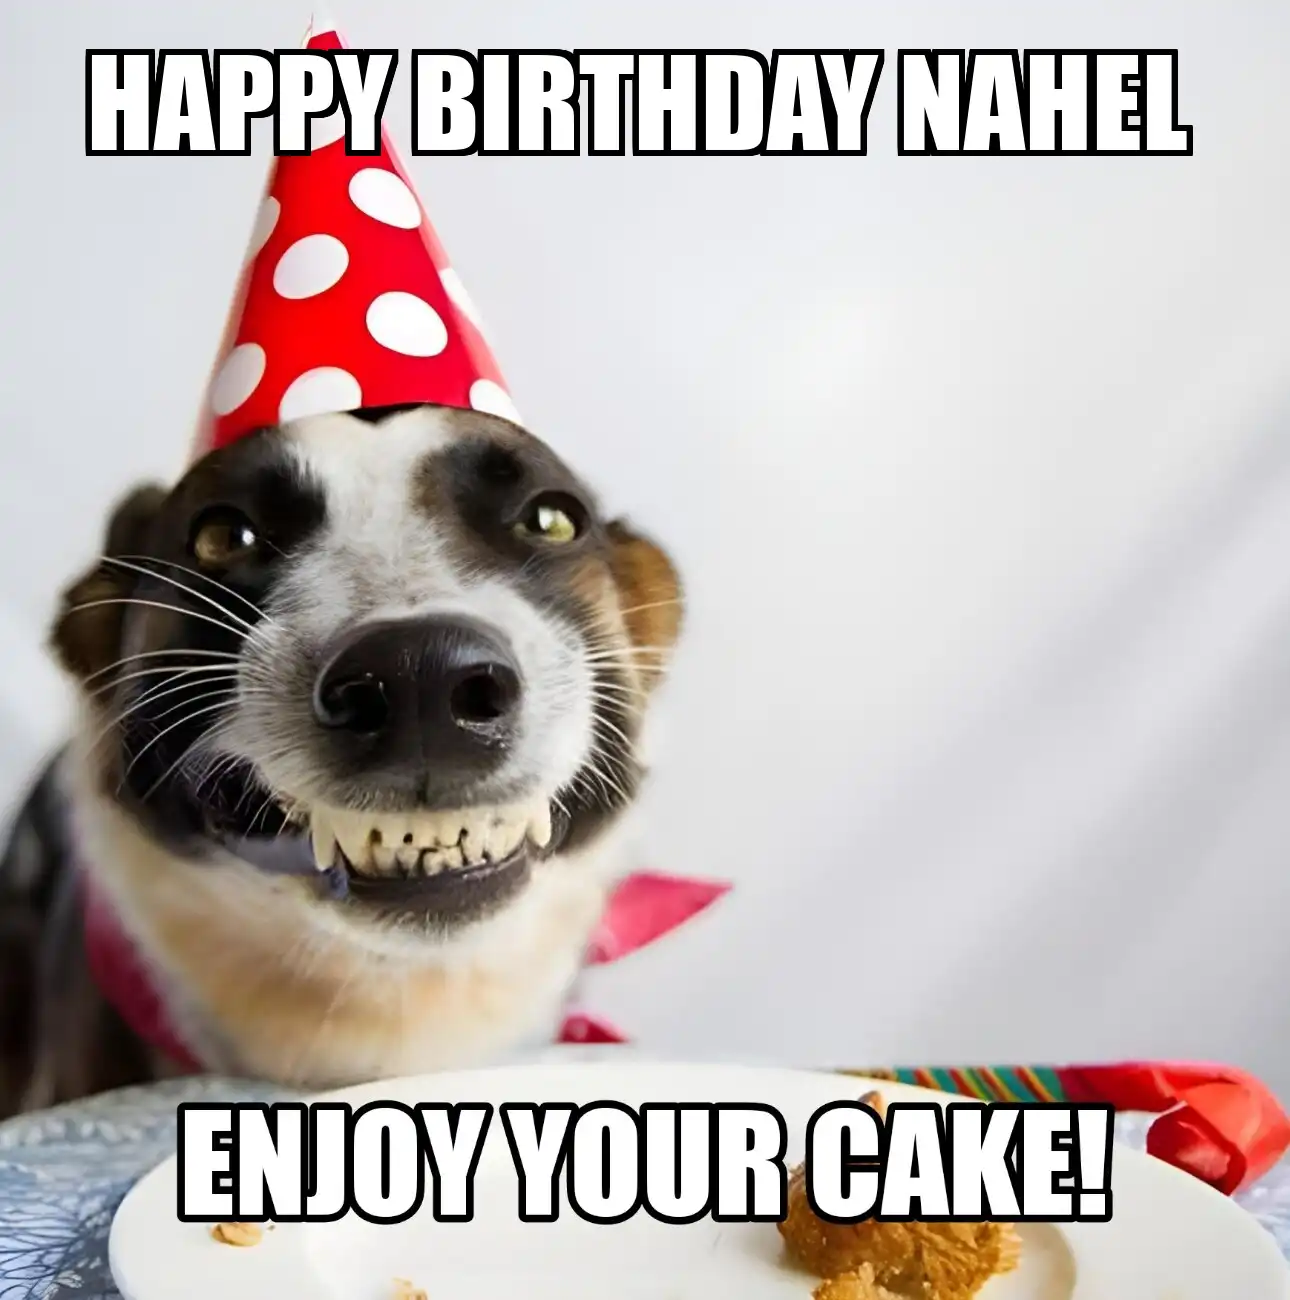 Happy Birthday Nahel Enjoy Your Cake Dog Meme